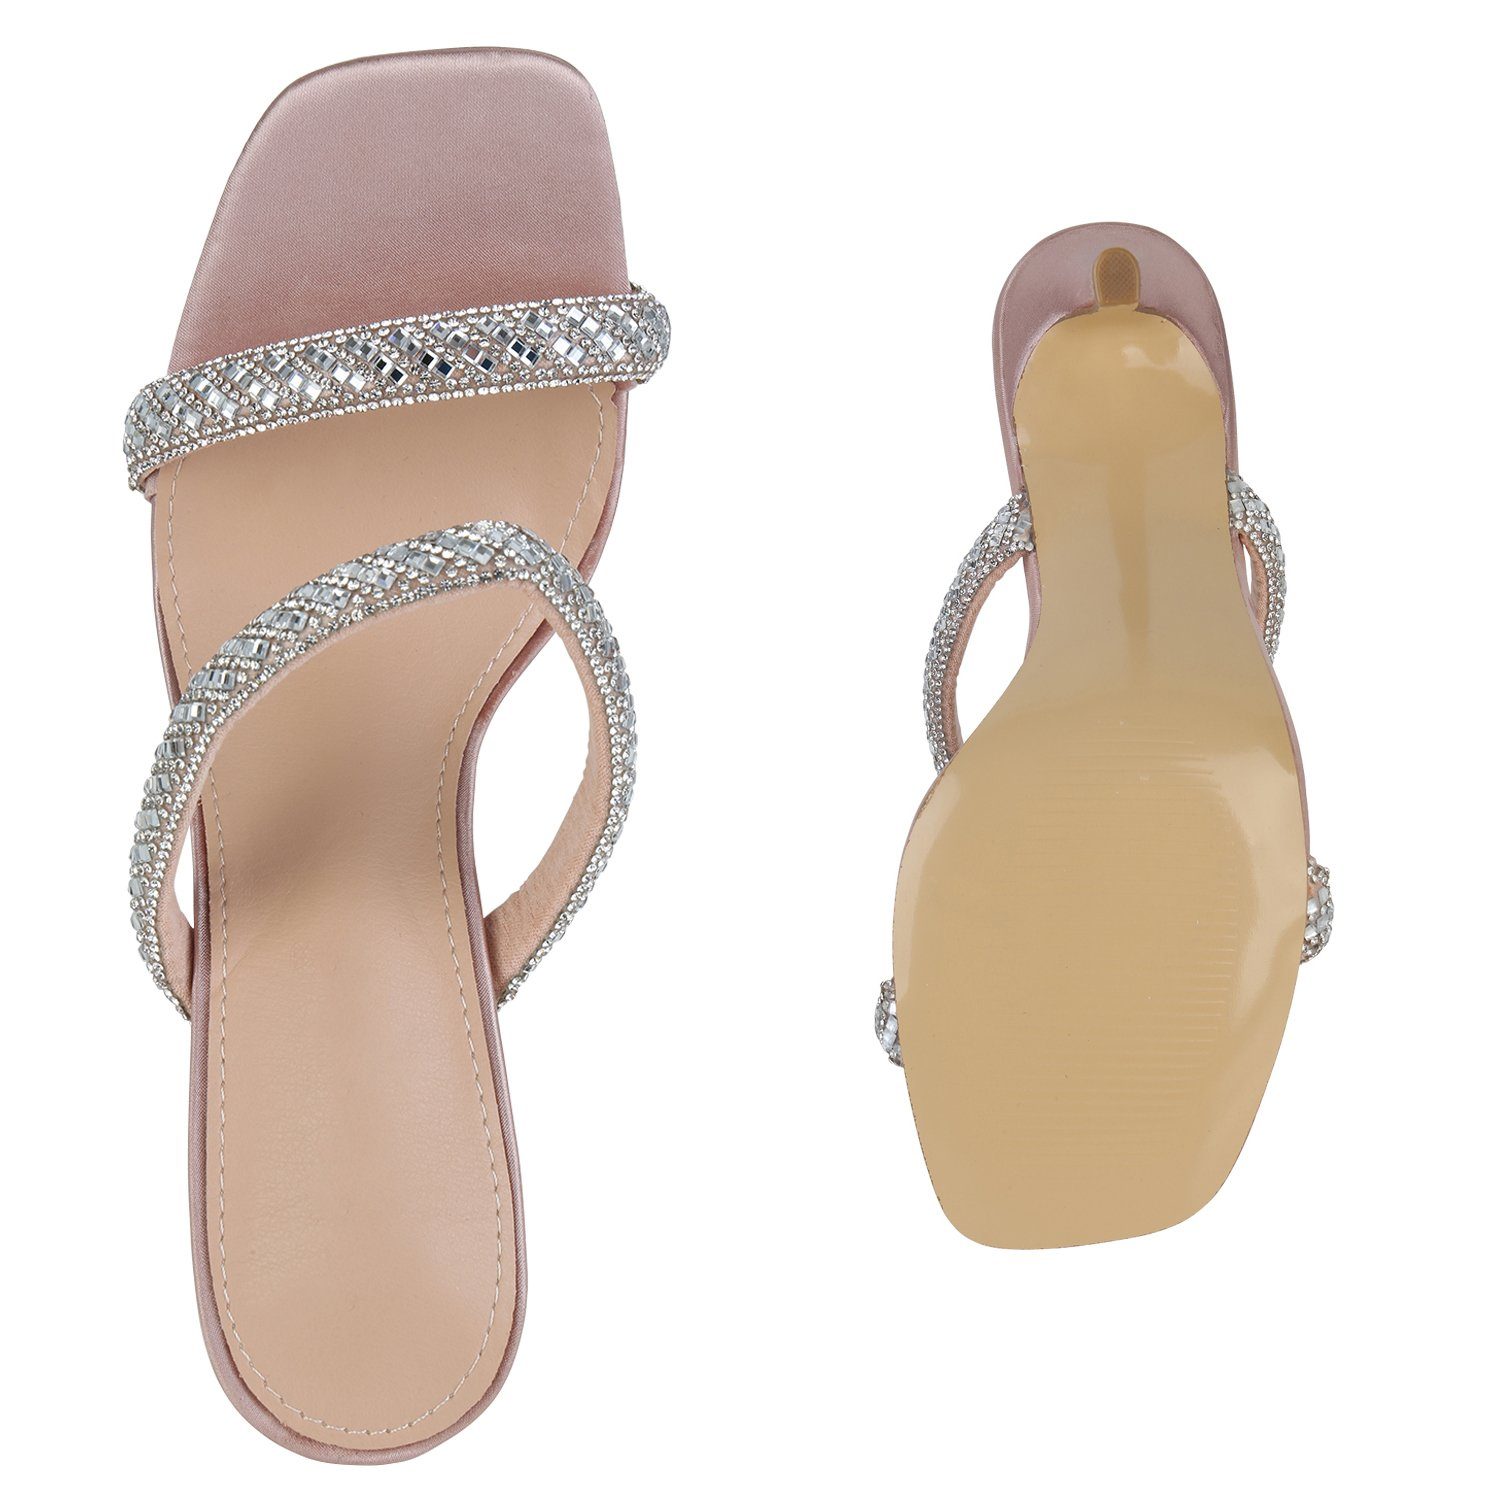 HILL Bequeme High-Heel-Sandalette Rose VAN Gold 840012 Schuhe